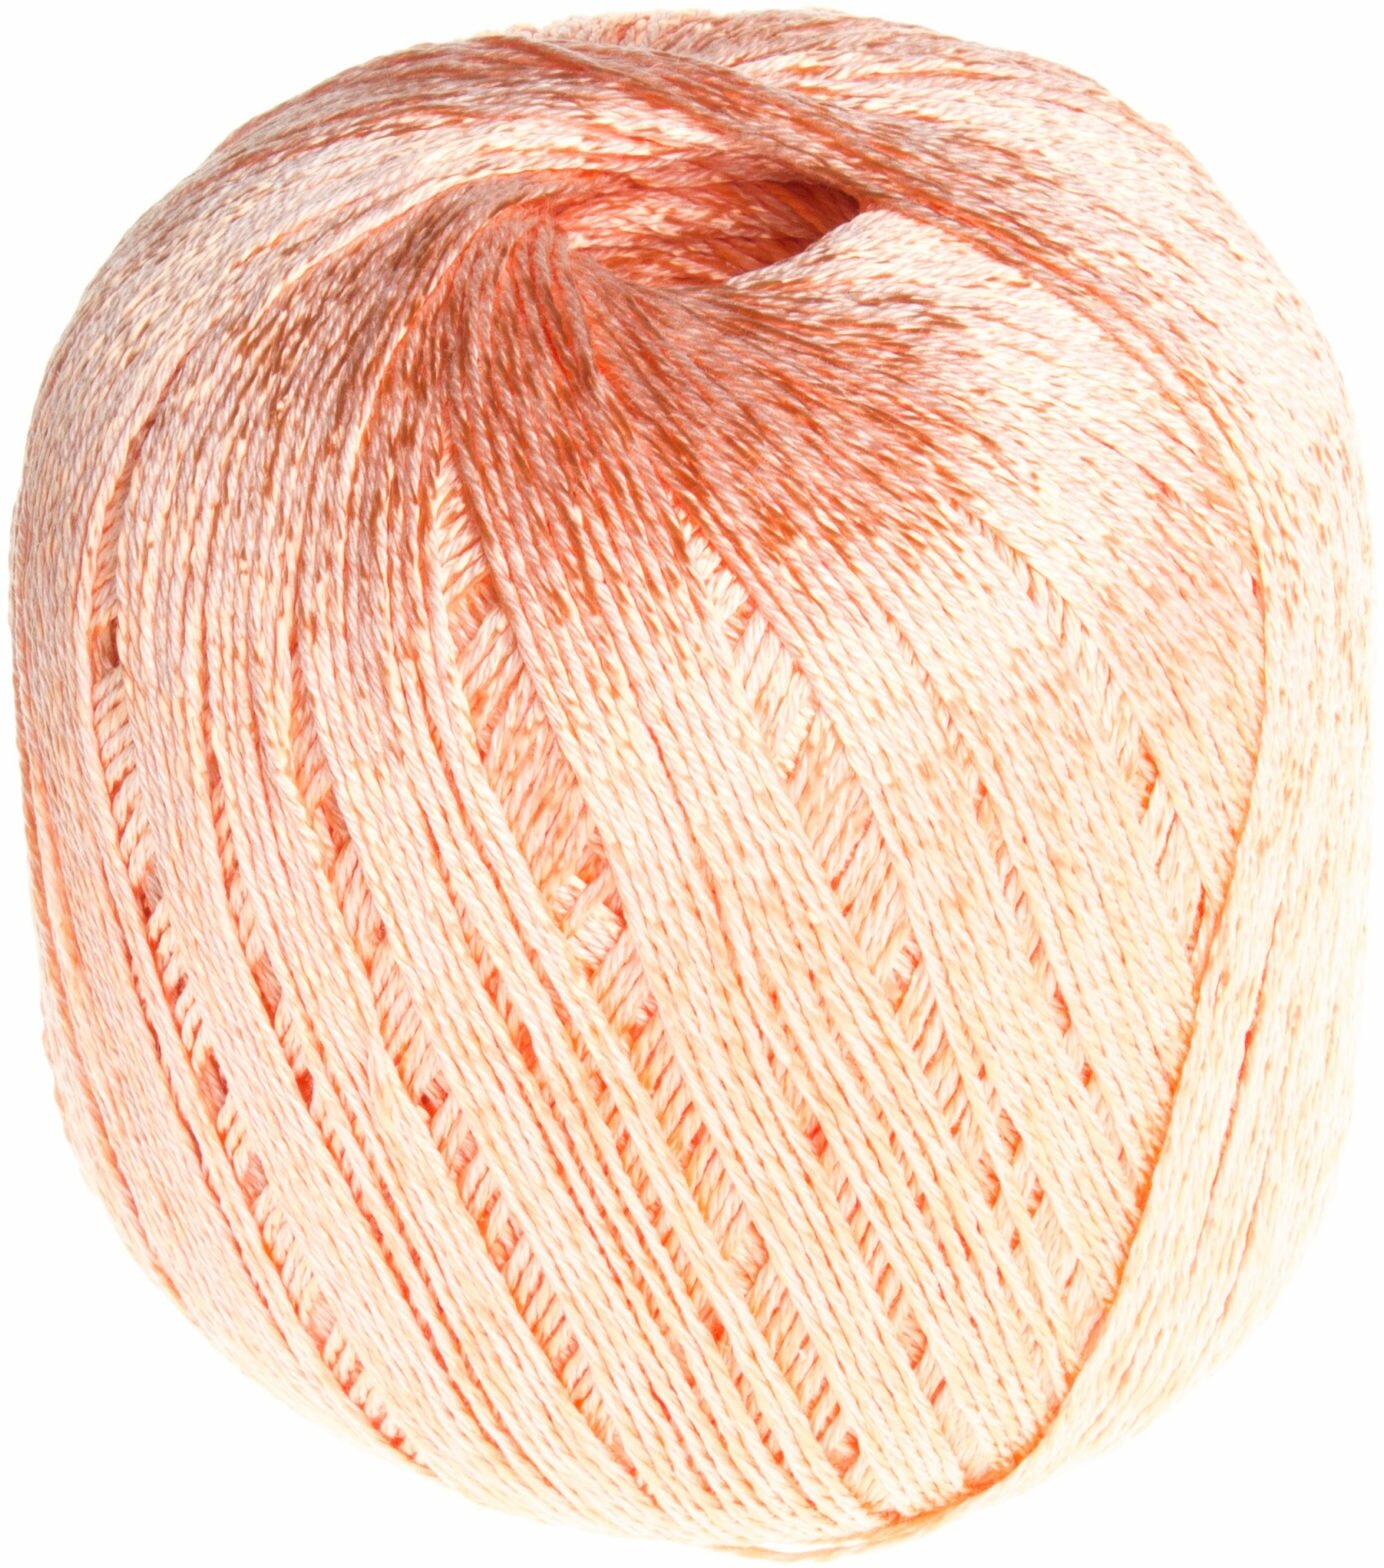 Пряжа Семеновская Irina вереск (1445), 66%хлопок мерсеризованный/34%вискоза, 334м, 100г, 1шт